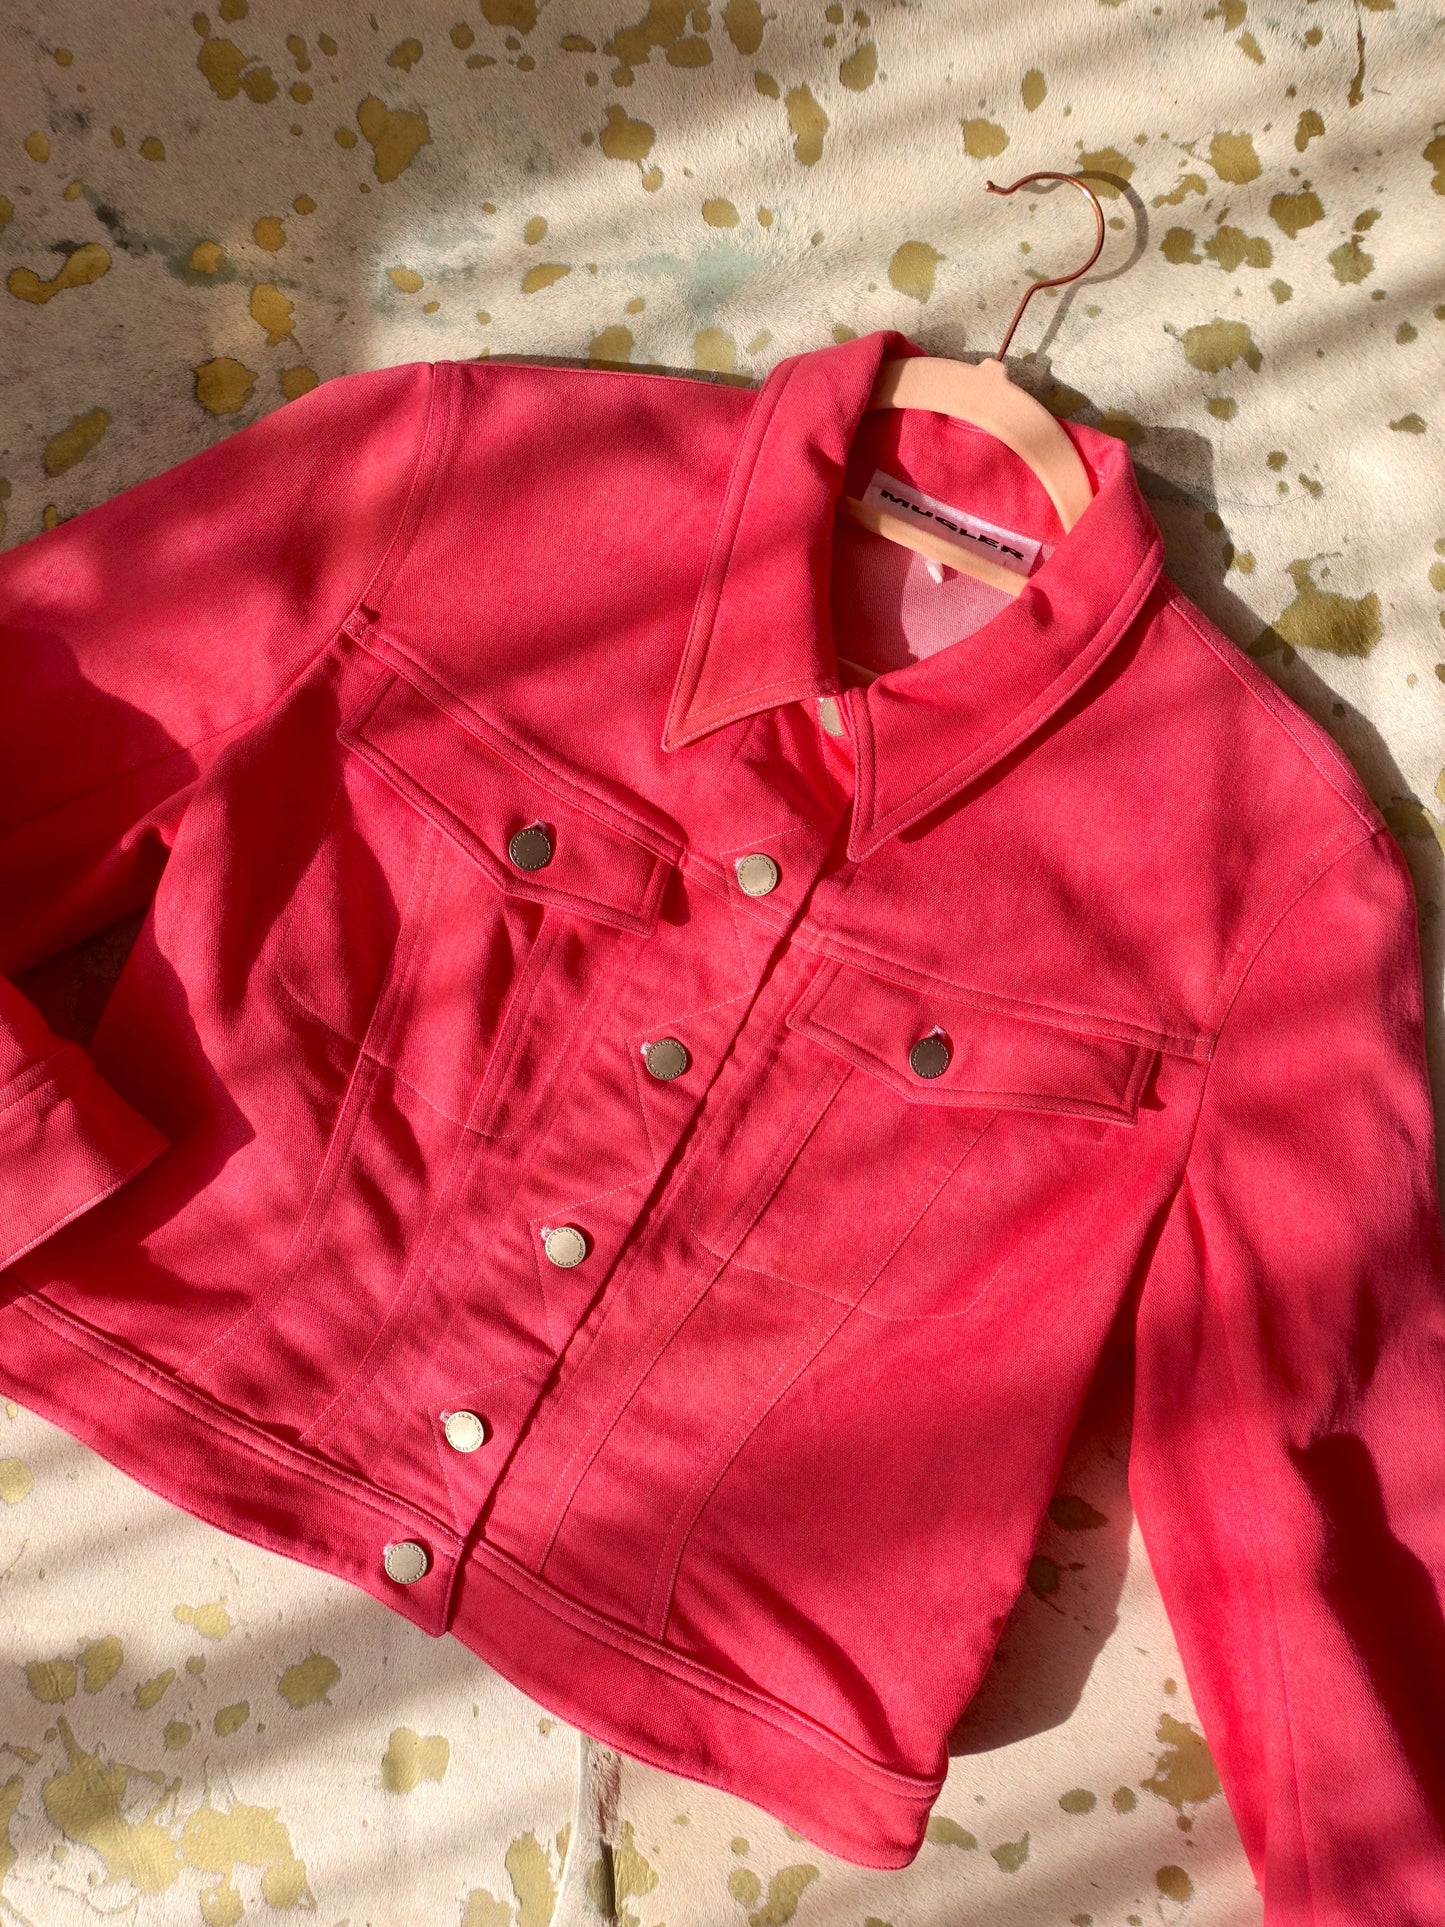 Thierry Mugler vintage denim jacket rose